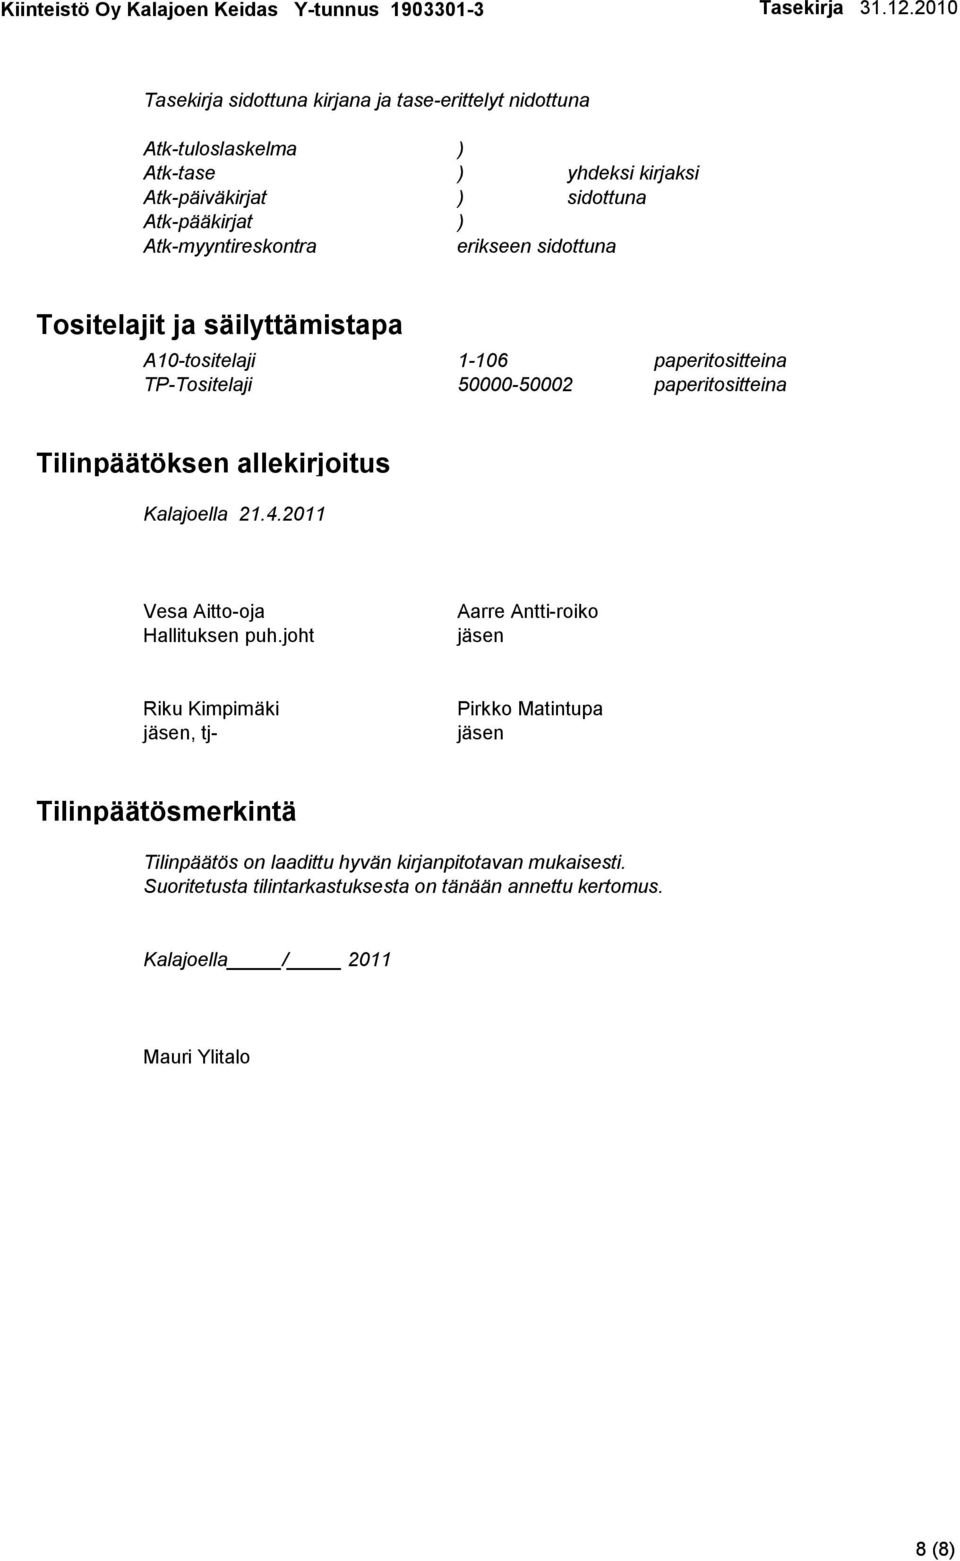 Tilinpäätöksen allekirjoitus Kalajoella 21.4.2011 Vesa Aitto-oja Hallituksen puh.